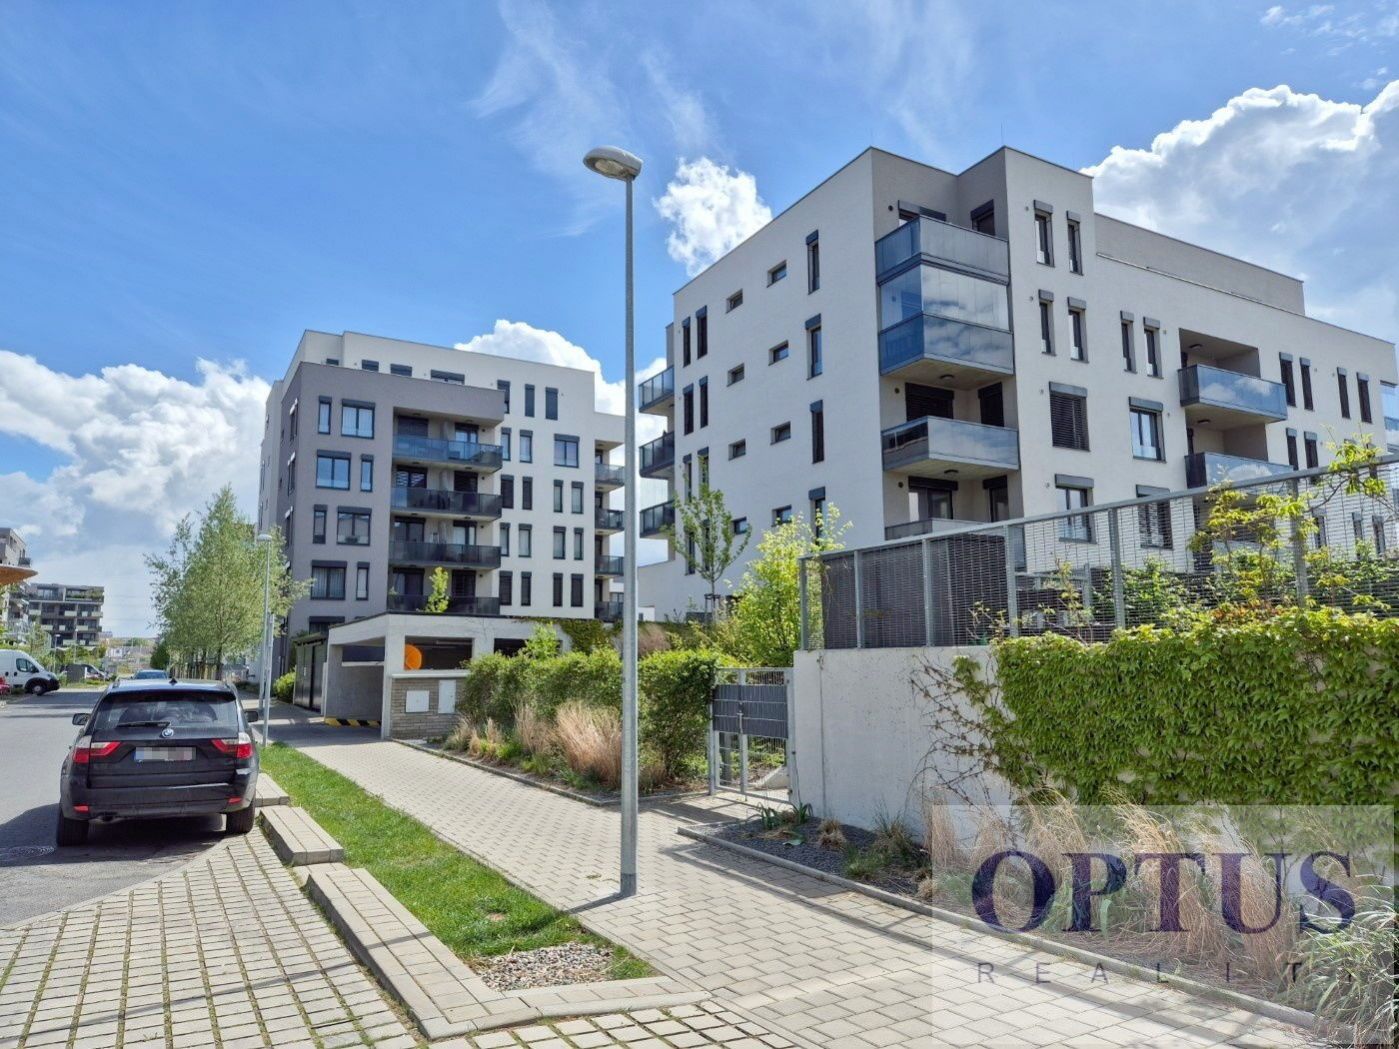 P9 Hloubětín, ul. Waltariho, nový slunný byt 3 + k.k., balkon, 77 m2, sklep, garáž, 27.000 Kč/měsíc, obrázek č. 1